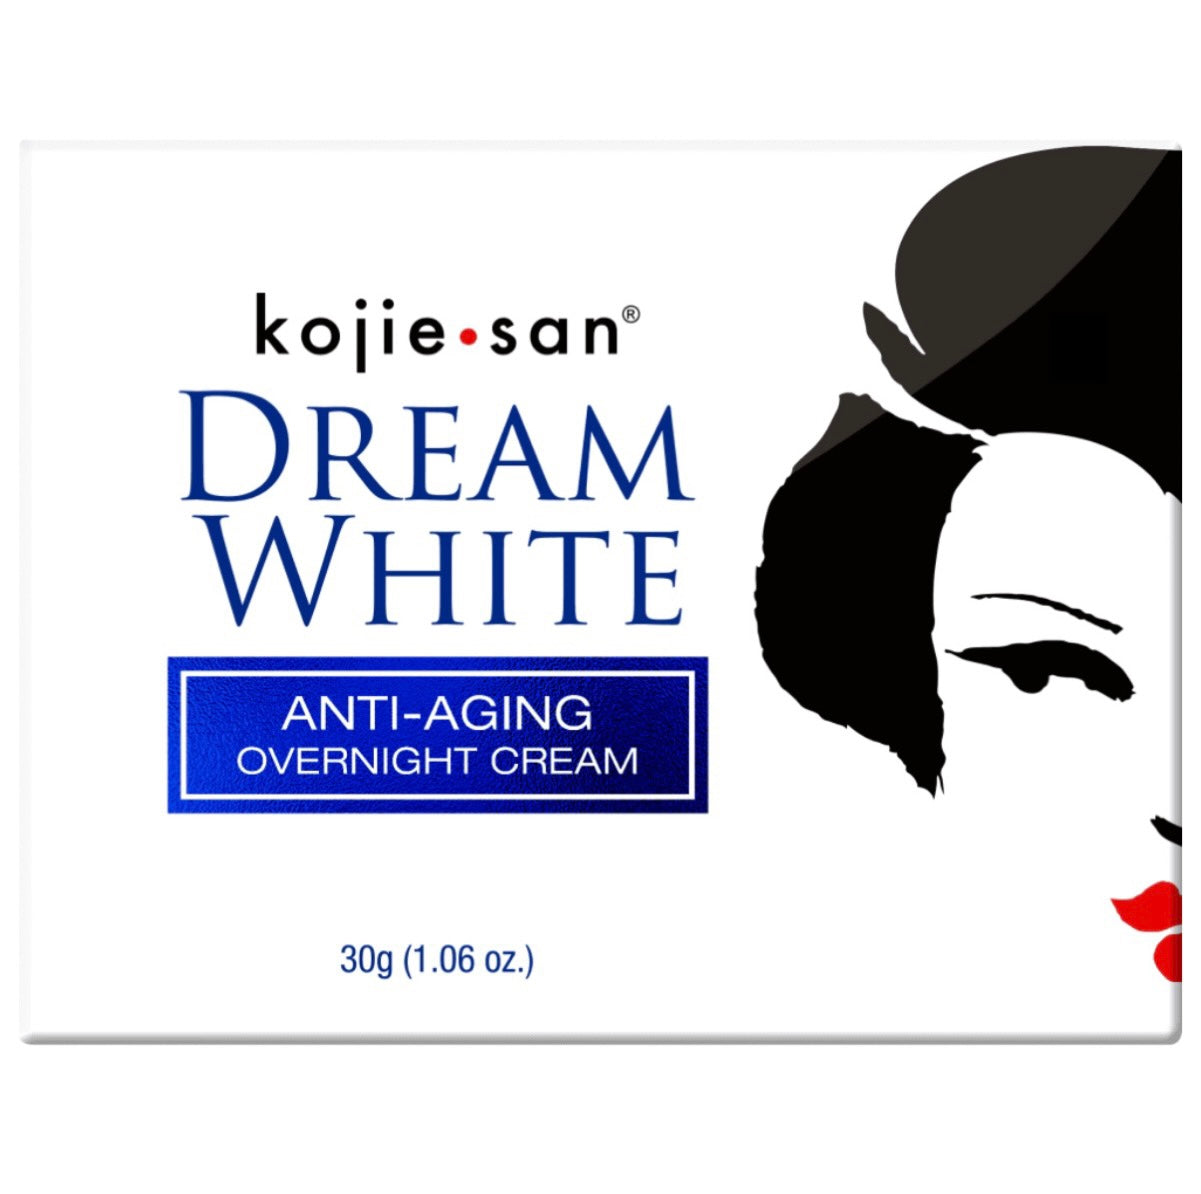 Kojie San Dream White Anti-Aging Overnight Cream 30g